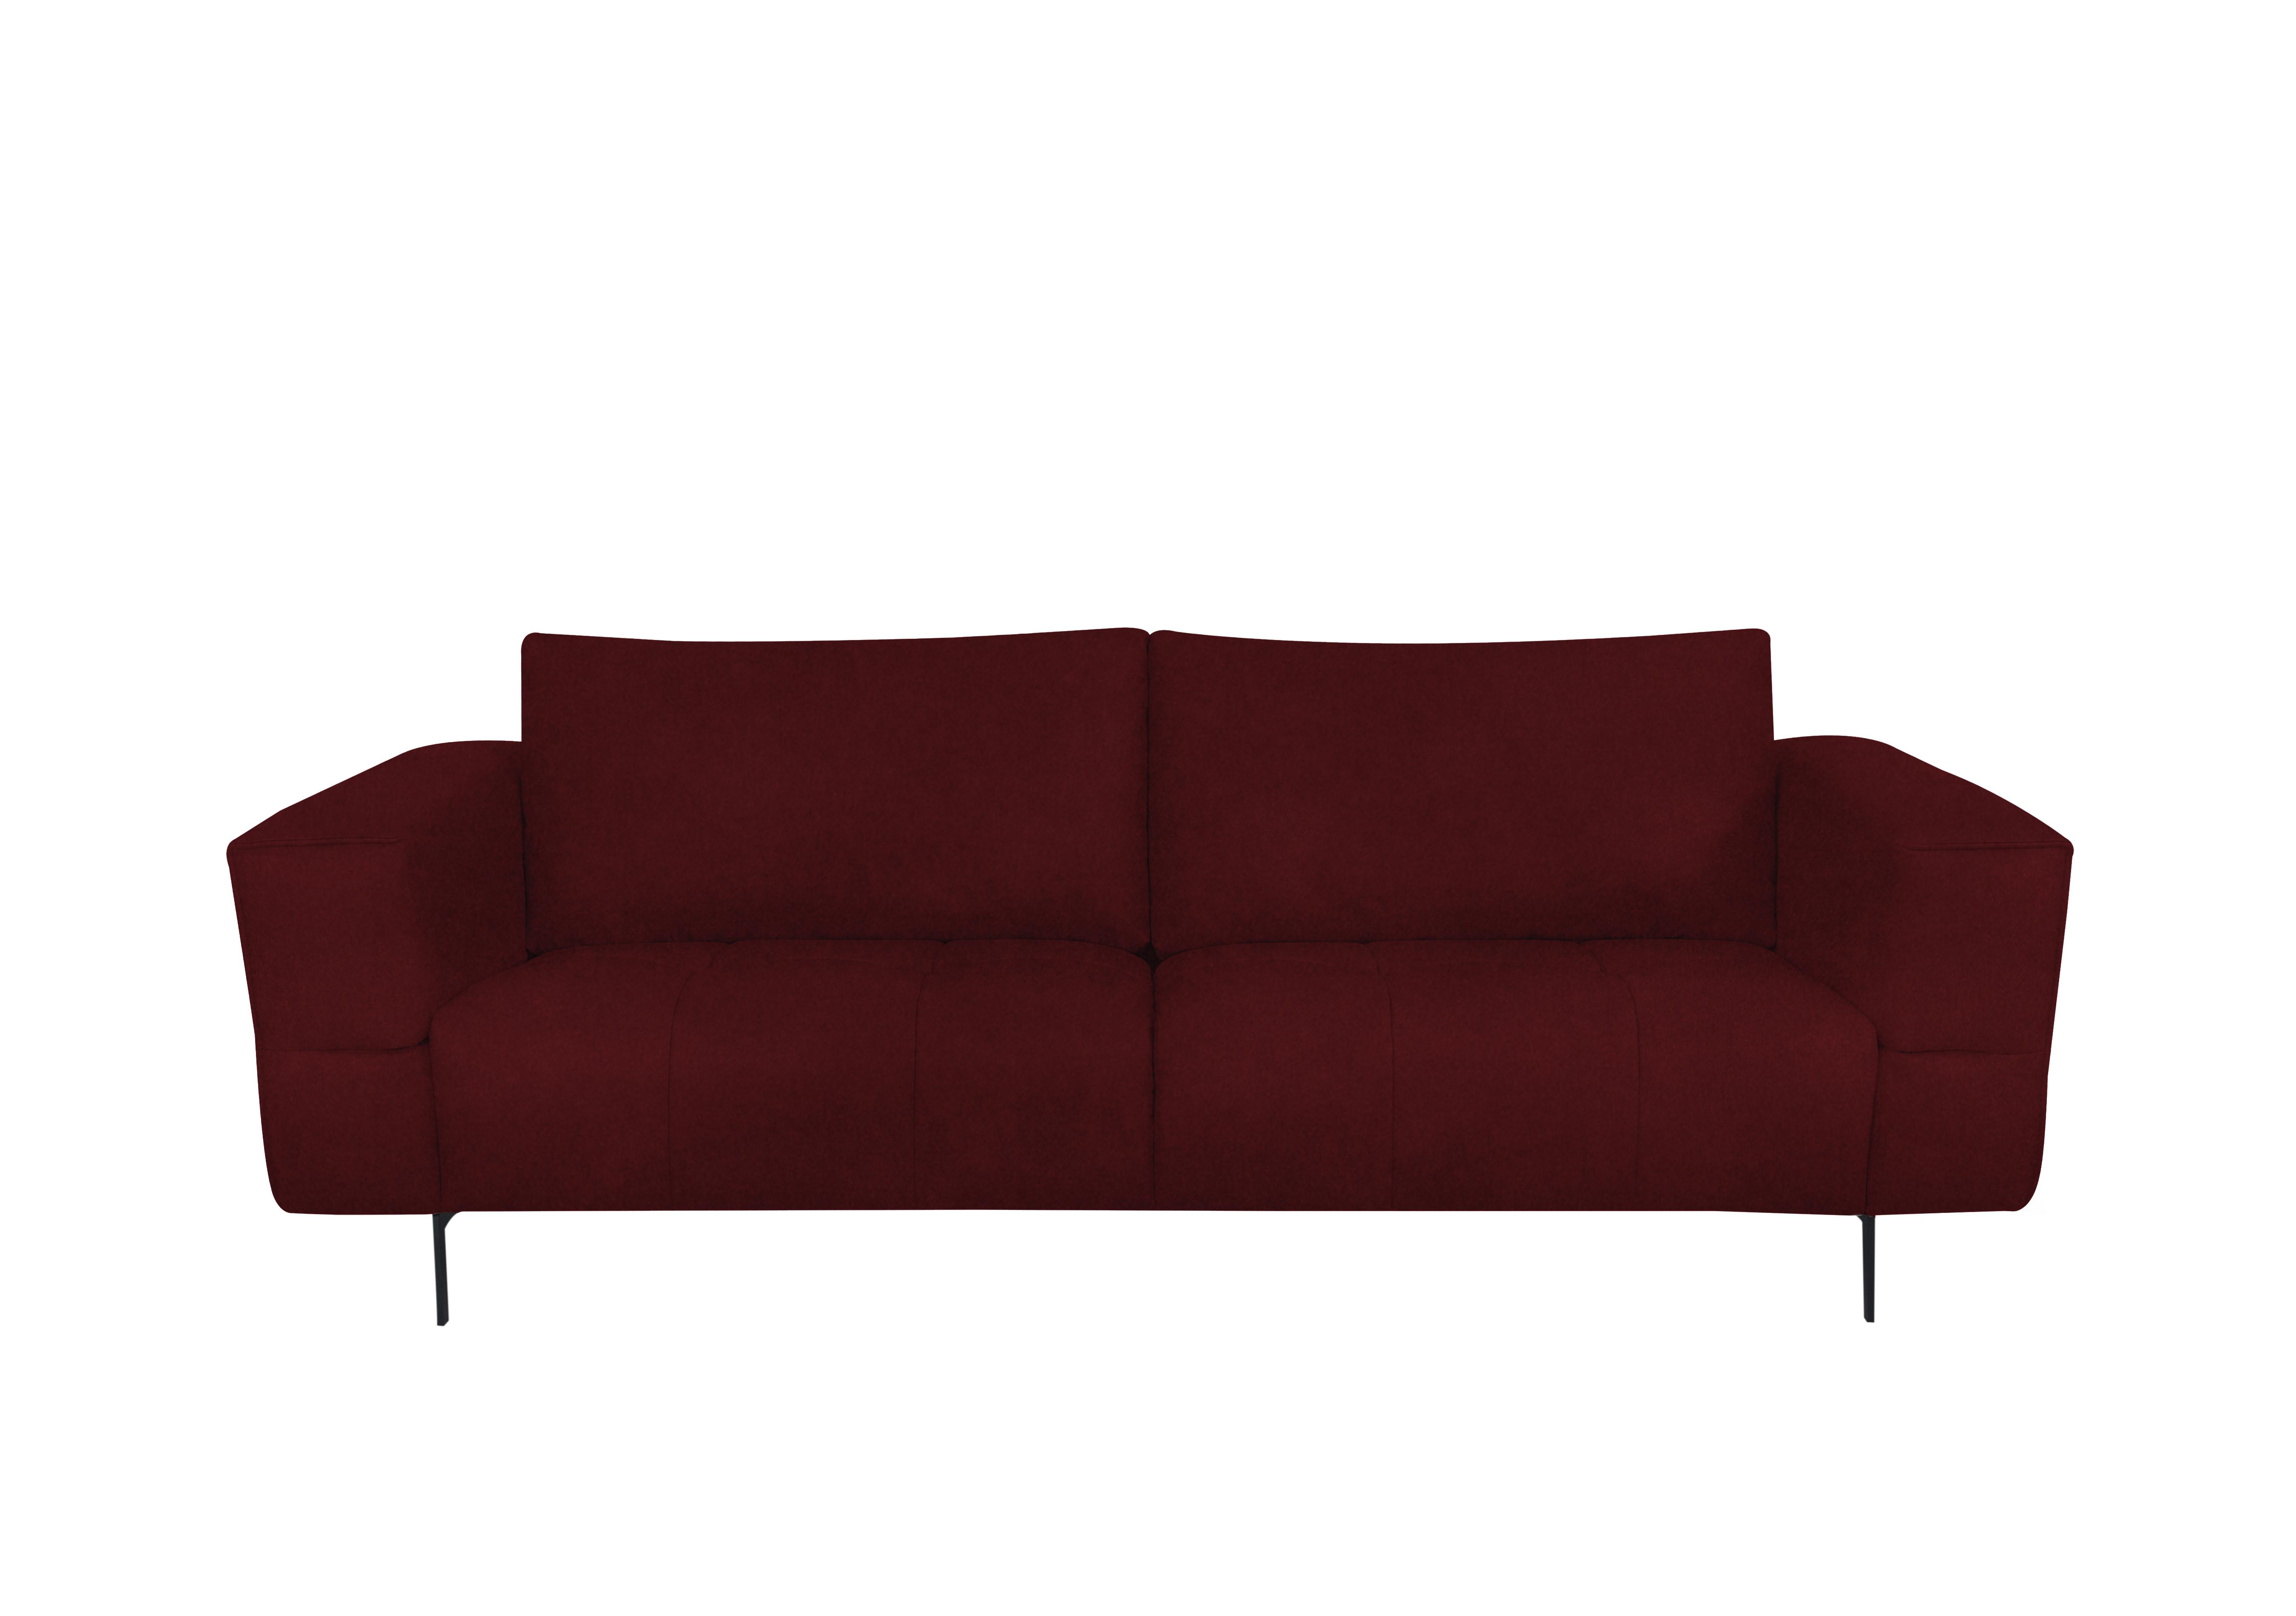 Lawson 3 Seater Fabric Sofa in Fab-Meg-R65 Burgundy on Furniture Village